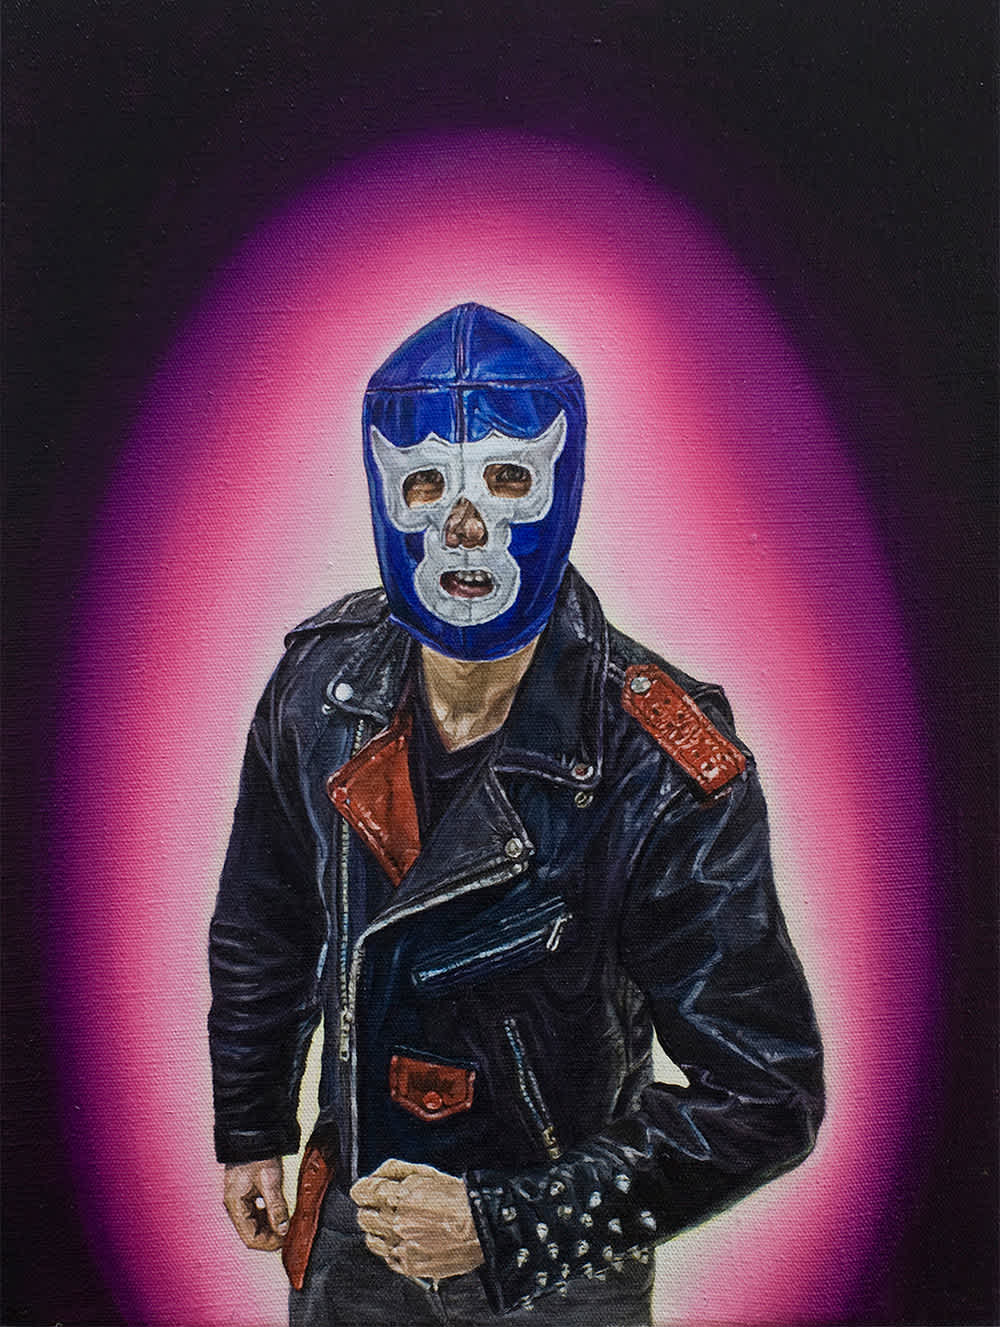 wrestlingmask-leatherjacket-hands-aura-painting